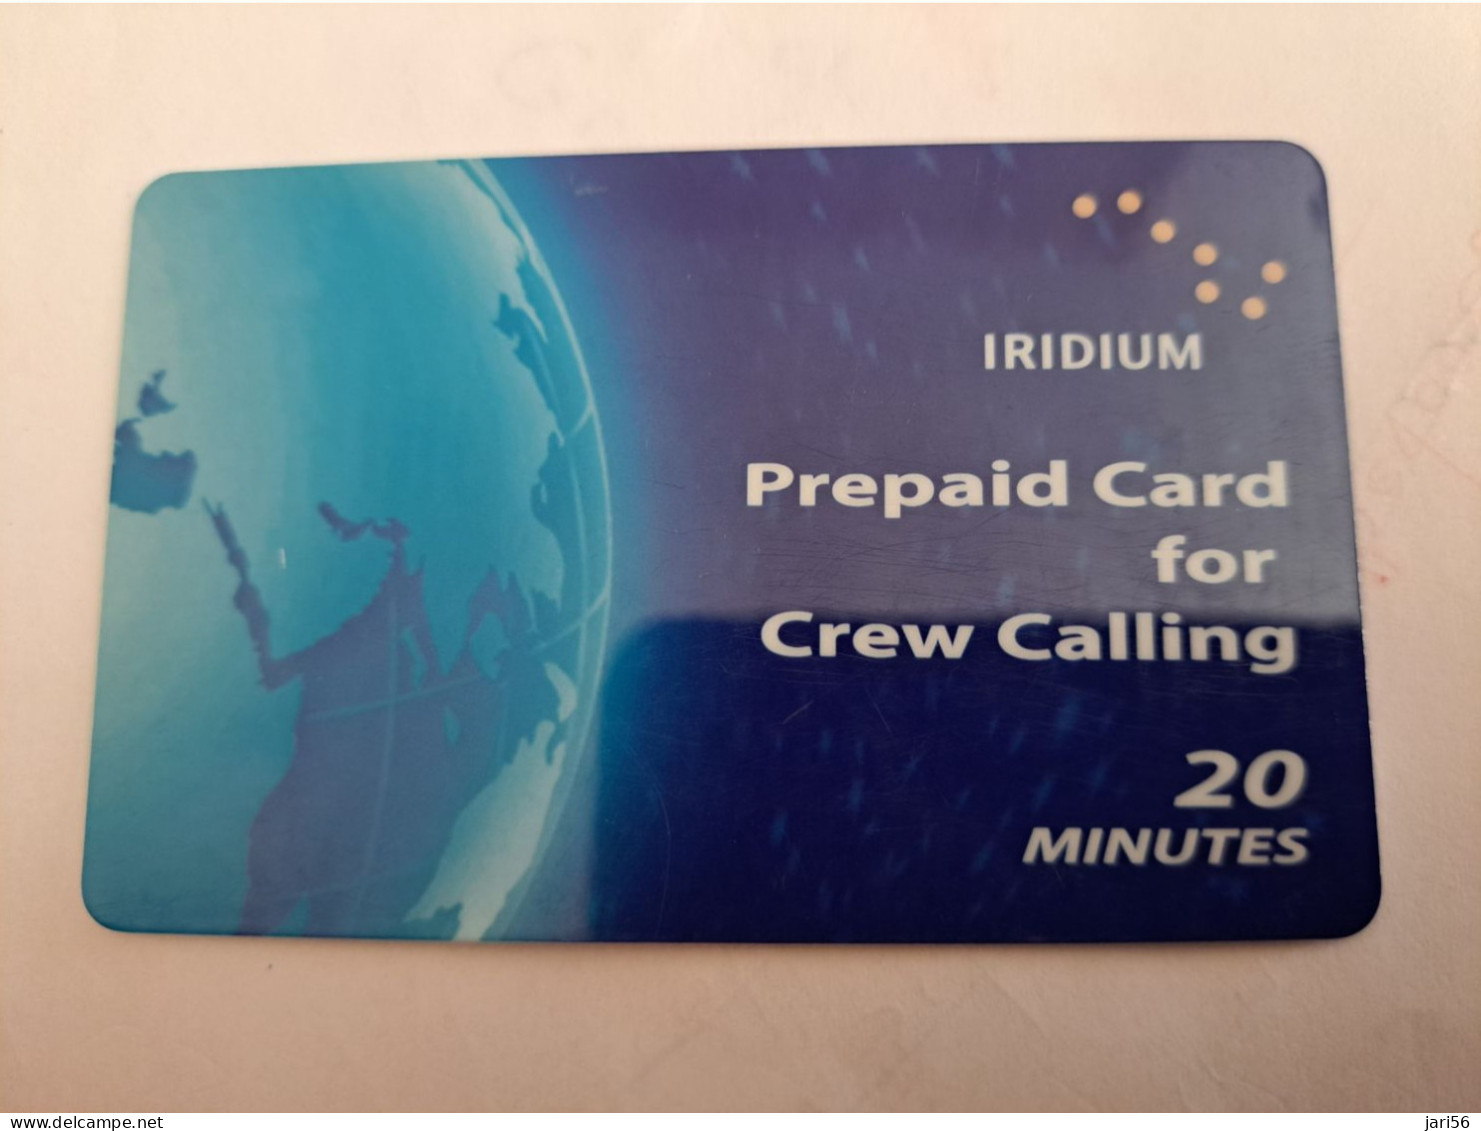 GREAT BRITAIN / IRIDIUM PREPAID/ CREW CALLING  /20 MINUTES   PREPAID CARD / USED       **14042** - Collezioni